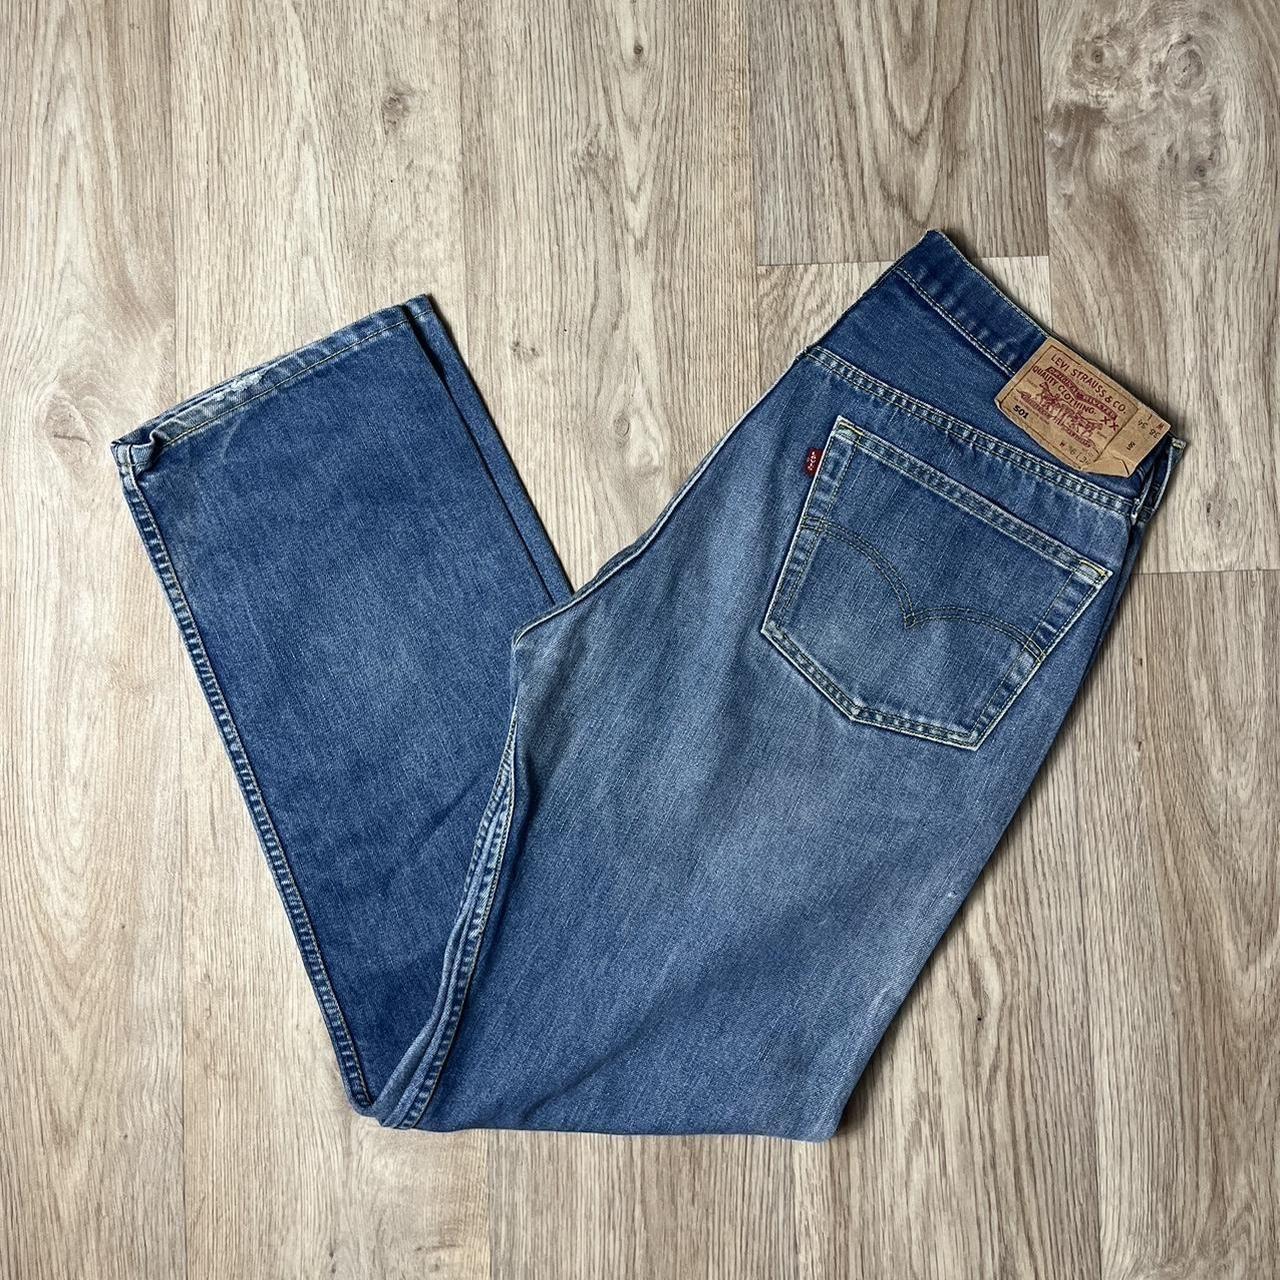 Vintage Rare Levis Jeans 90s LEVIS 501 “Coolmax”... - Depop